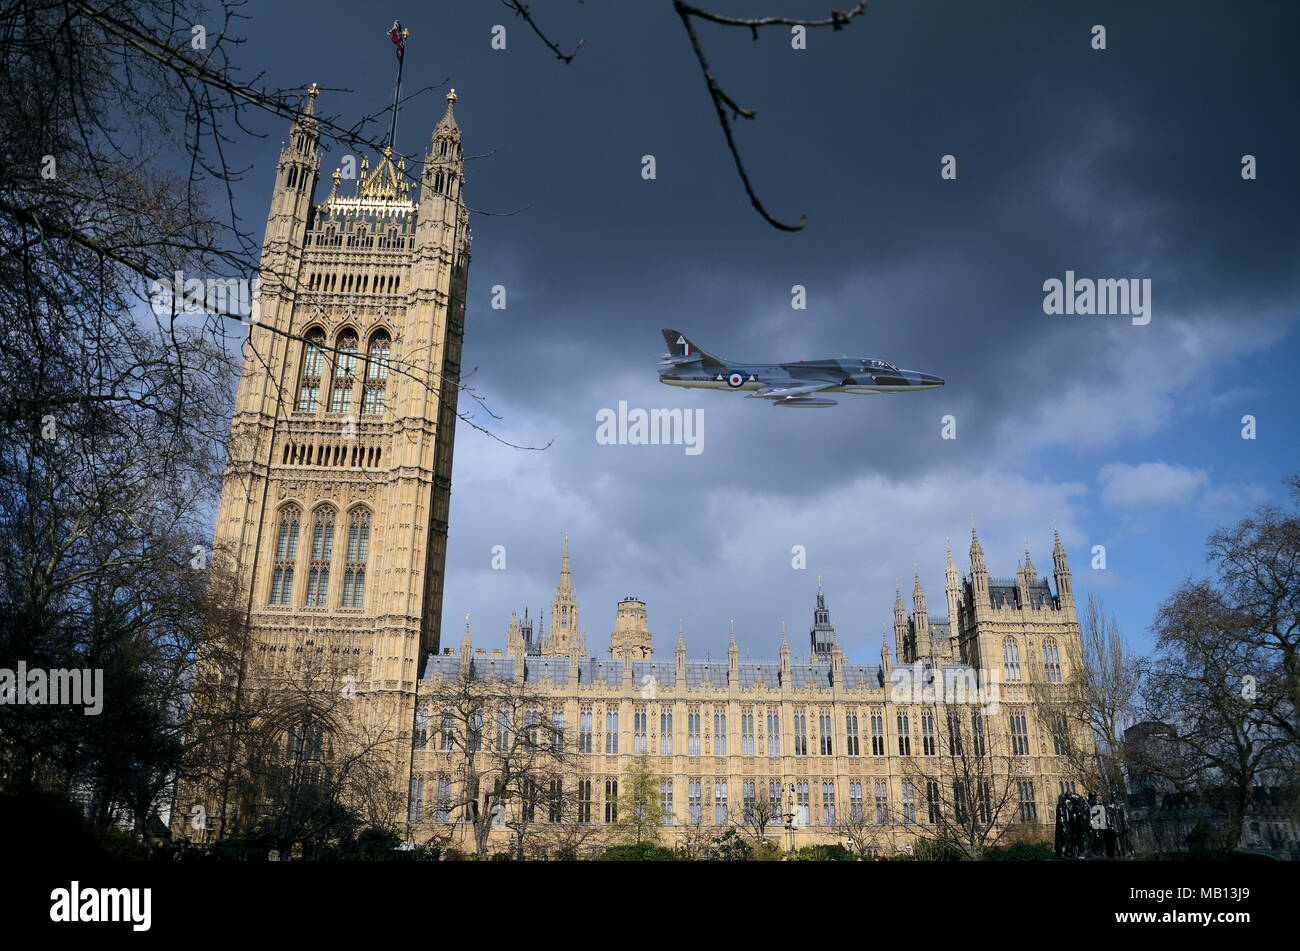 Fusionierte Bilder manipuliert der Vorfall am 5. April 1968, als Alan Pollock flog die Royal Air Force die Hawker Hunter Jet über das Parlament aus Protest zu zeigen Stockfoto